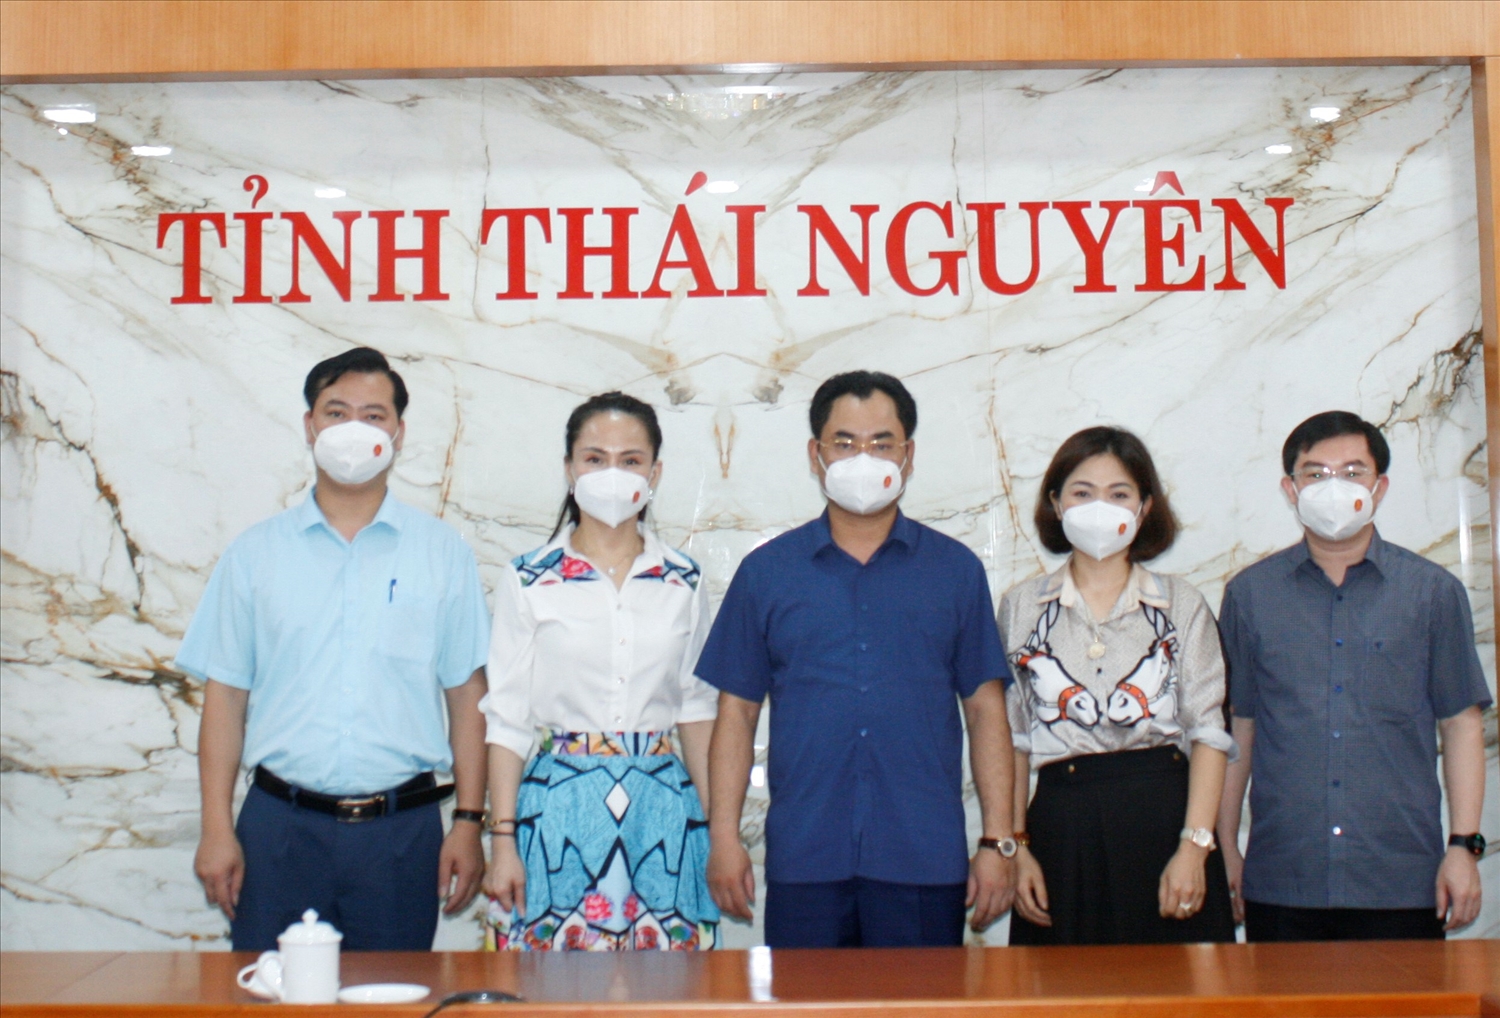 Chủ tịch UBND tỉnh Thái Nguyên Trịnh Việt Hùng (người đứng giữa) chụp ảnh cùng đoàn công tác Báo Dân tộc và Phát triển